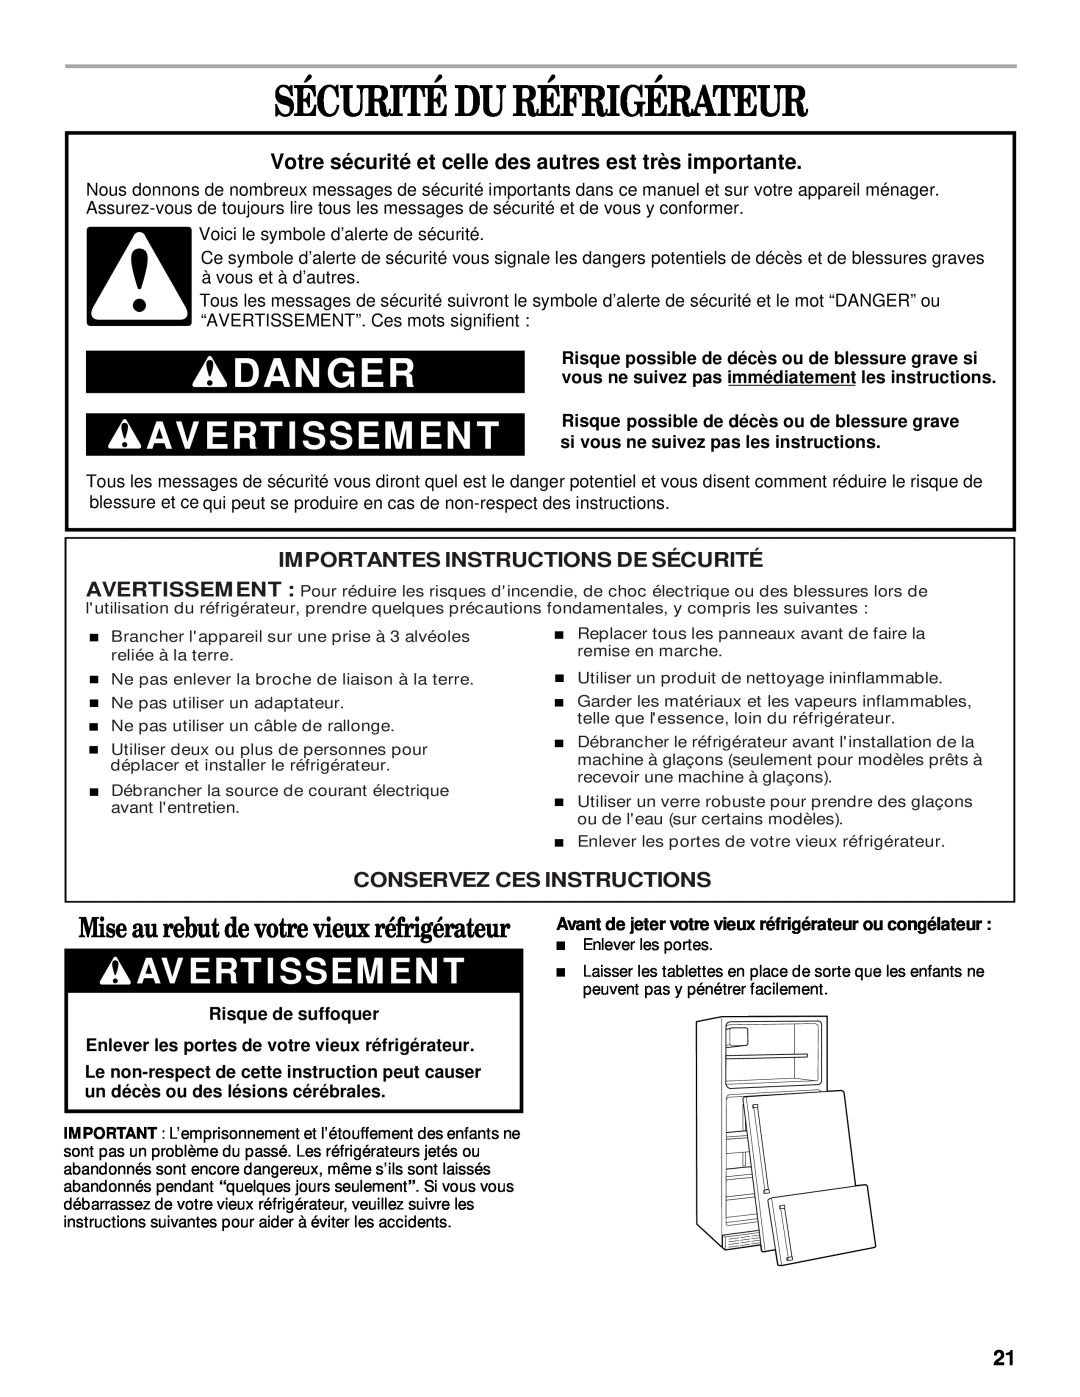 Whirlpool 2205266 manual Sécurité Du Réfrigérateur, Avertissement, Mise au rebut de votre vieux réfrigérateur, Danger 